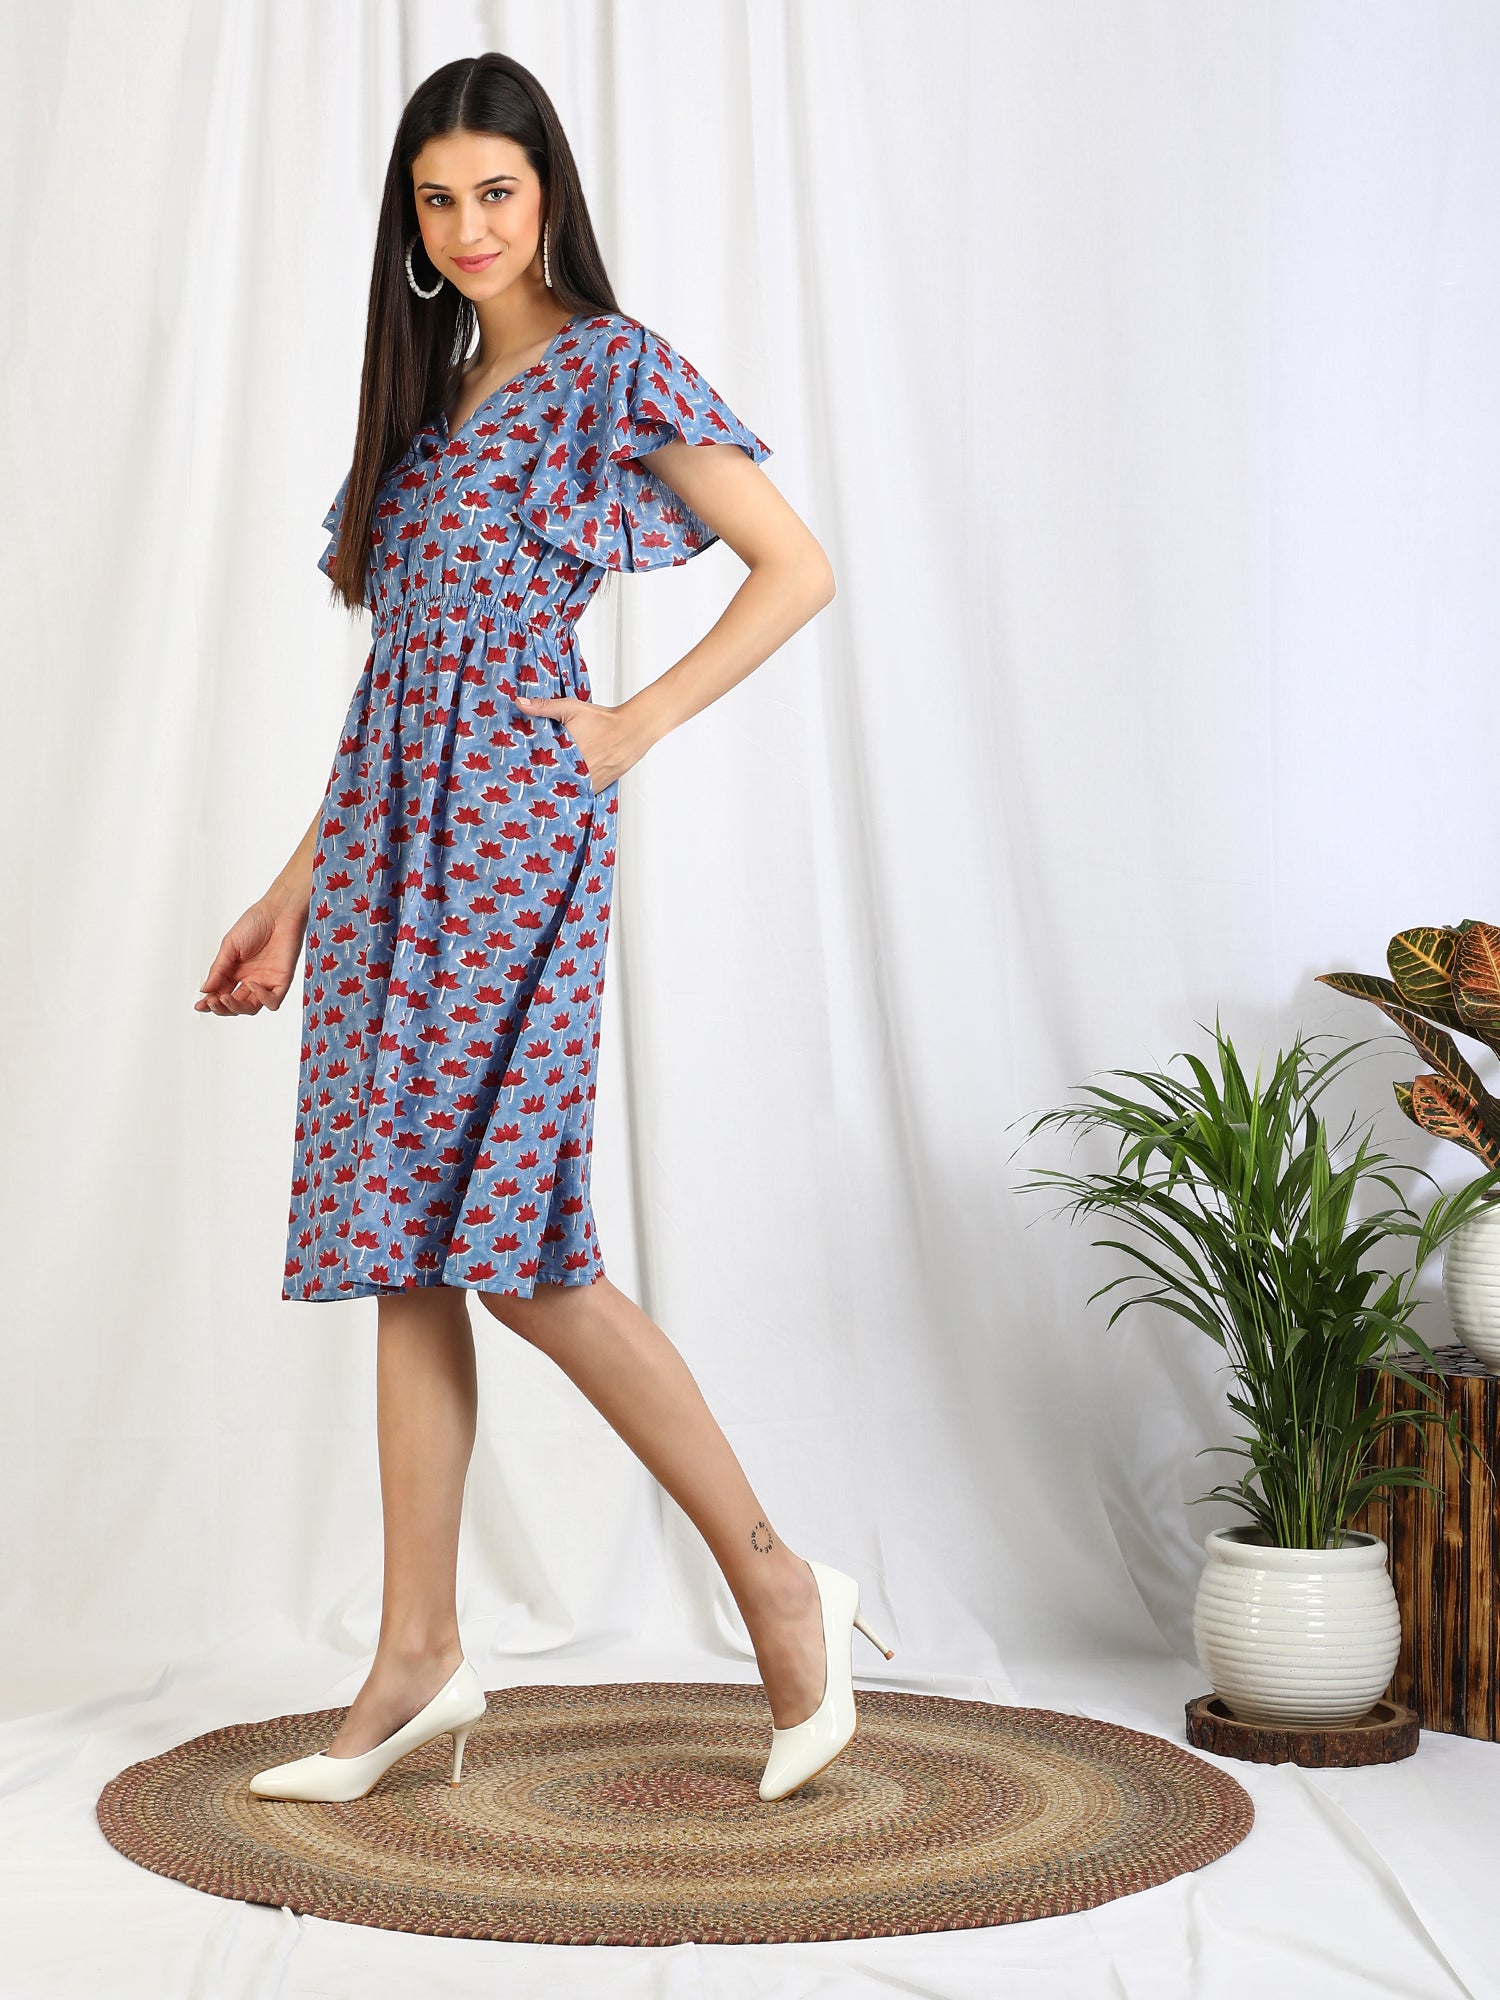 lavender dress for women online india